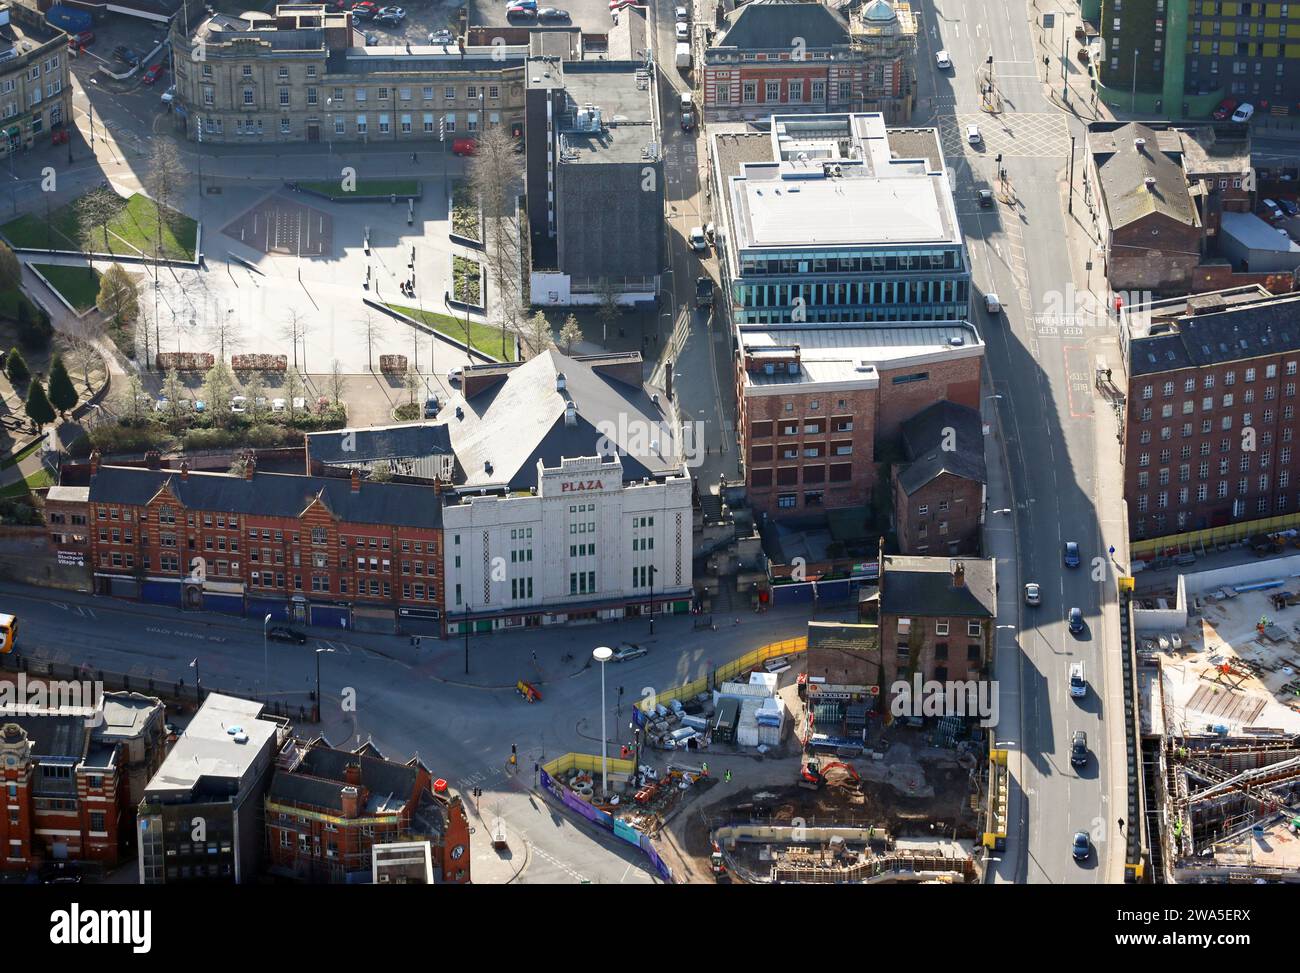 Veduta aerea del centro di Stockport, Greater Manchester con la facciata bianca del teatro delle arti dello spettacolo Plaza, prominente a metà scena Foto Stock